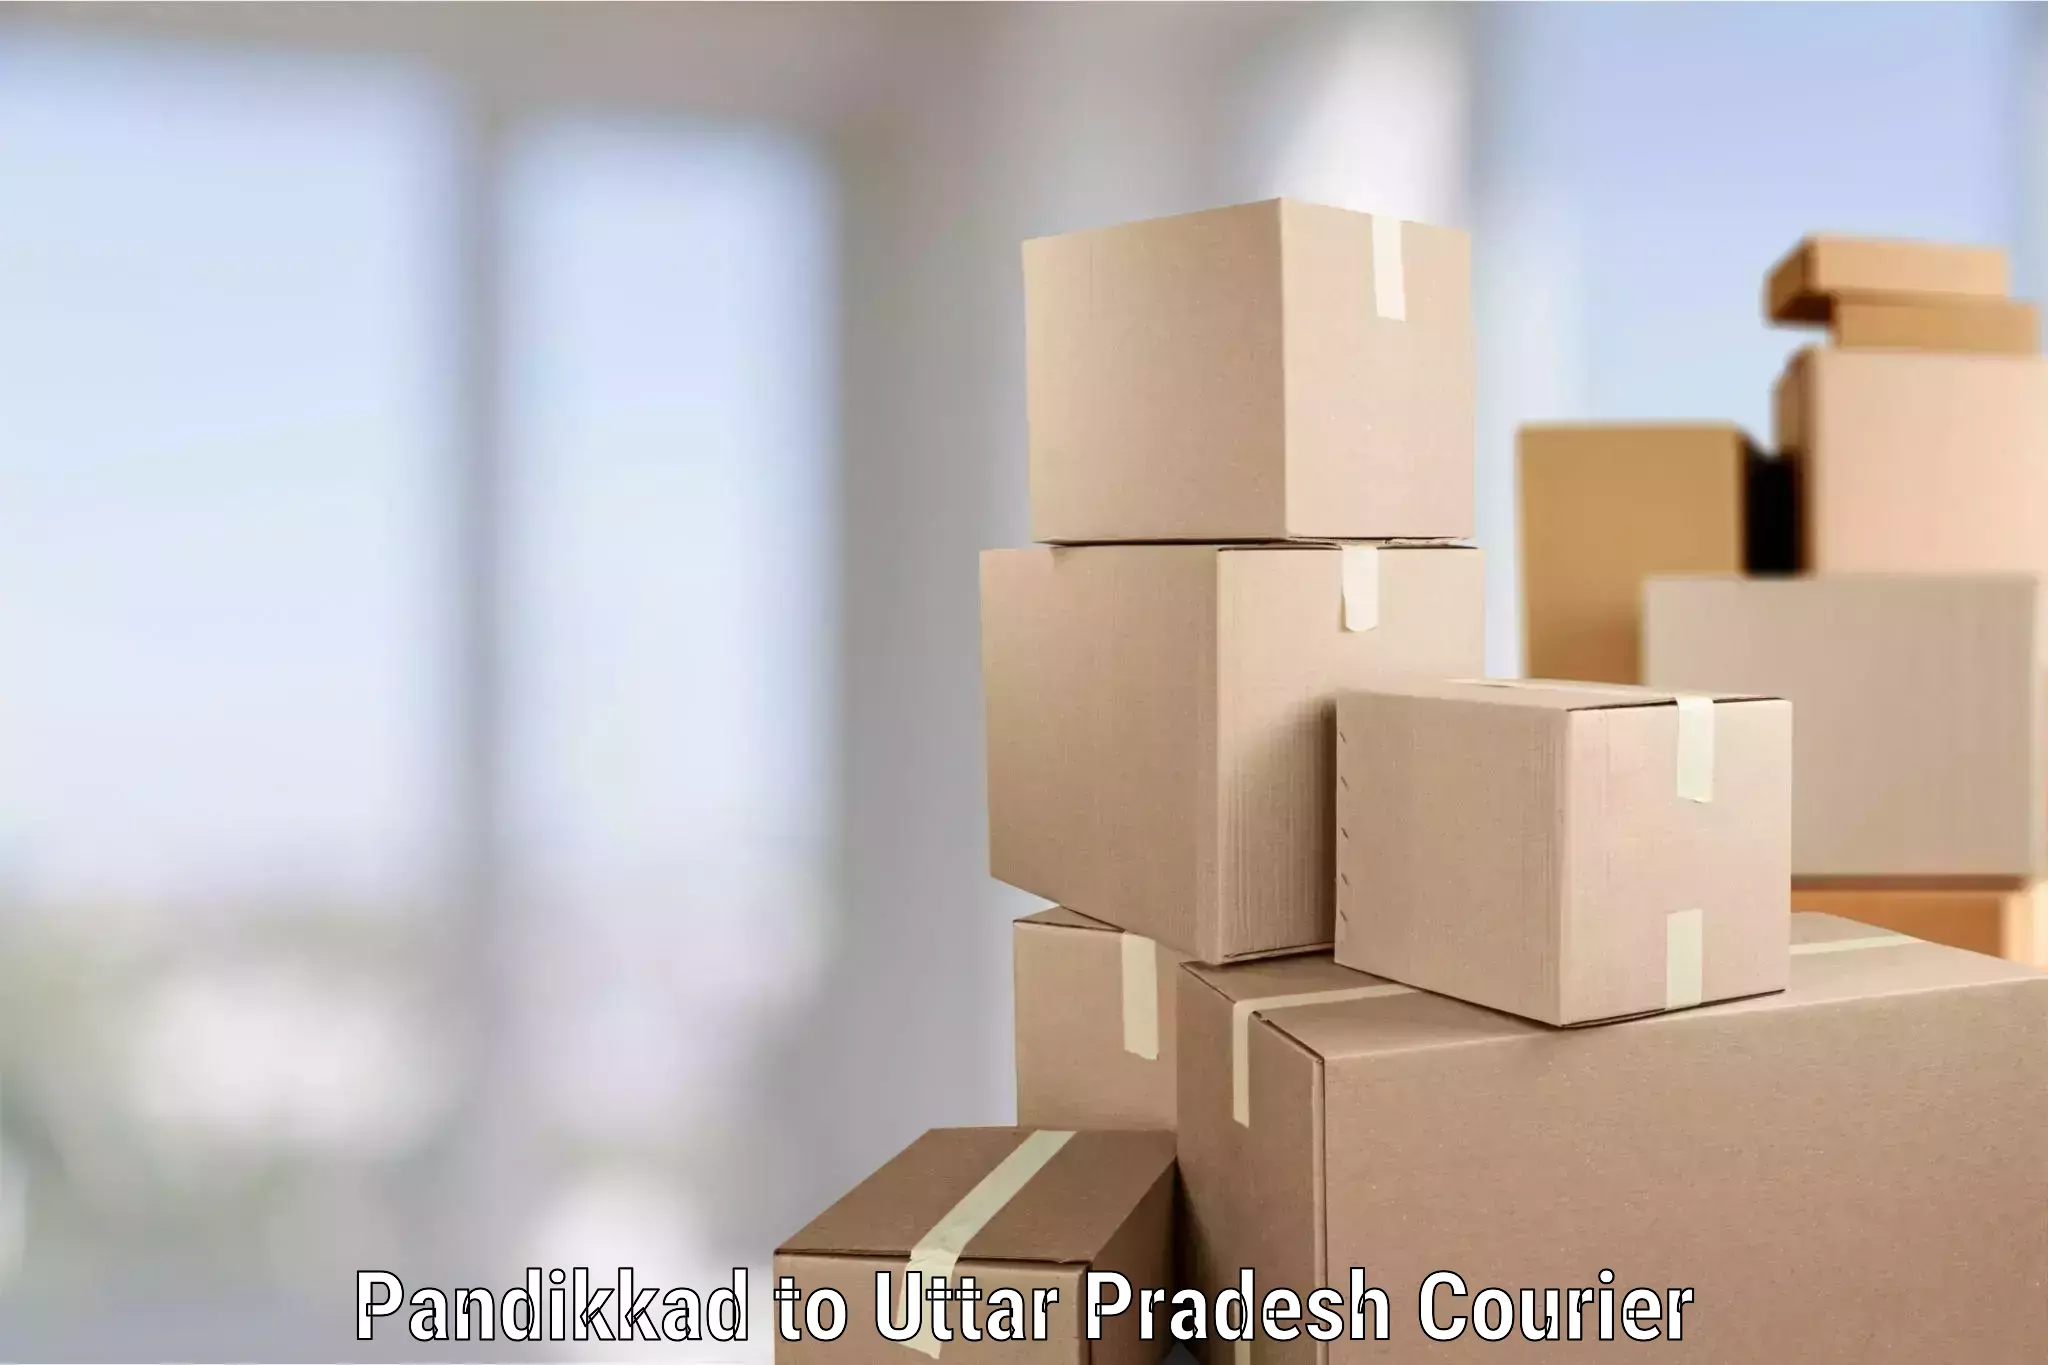 Professional moving company Pandikkad to Patti Pratapgarh